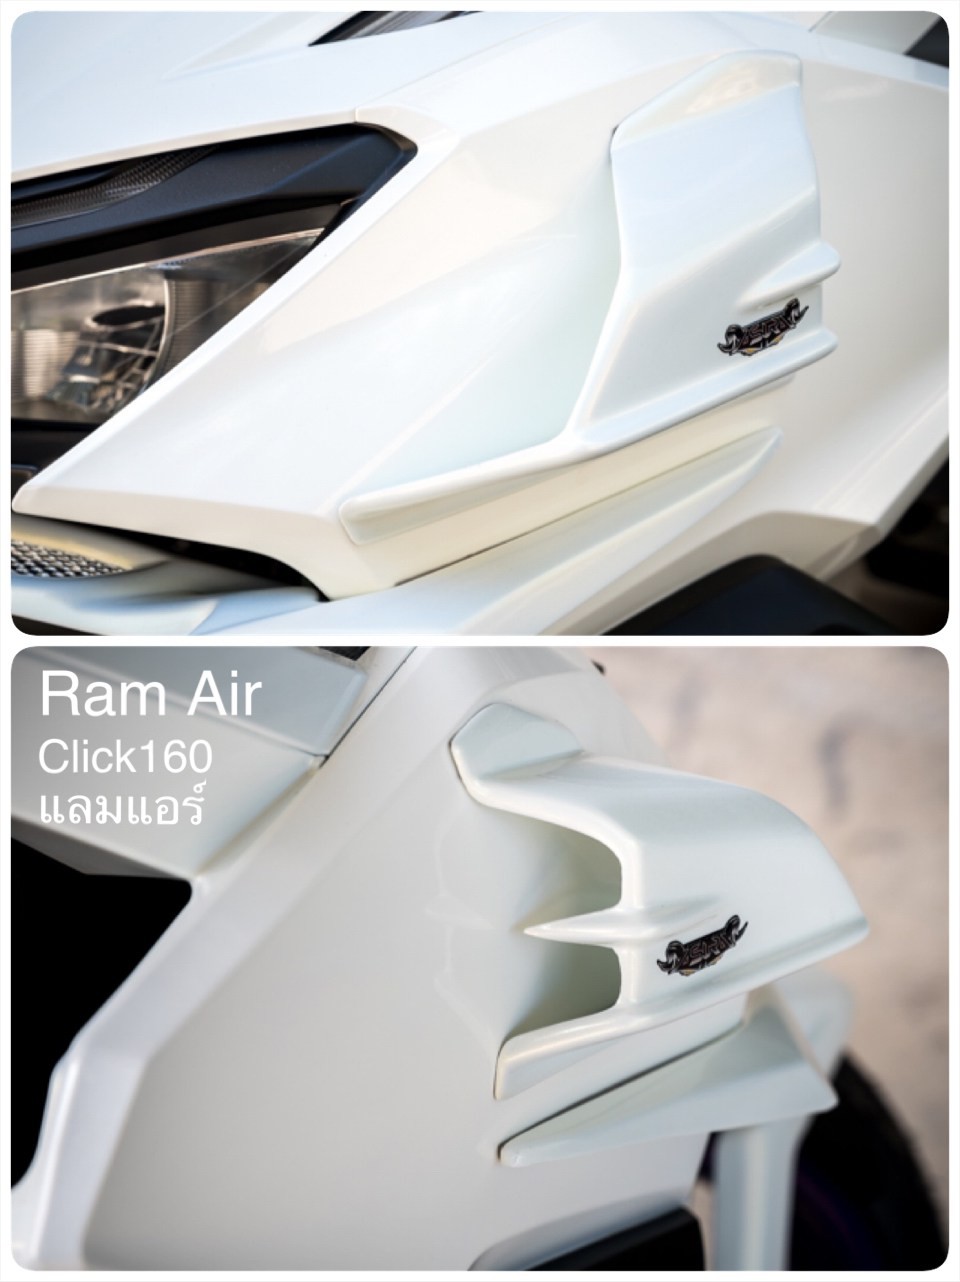 Ram Air AsurA For Honda Click160